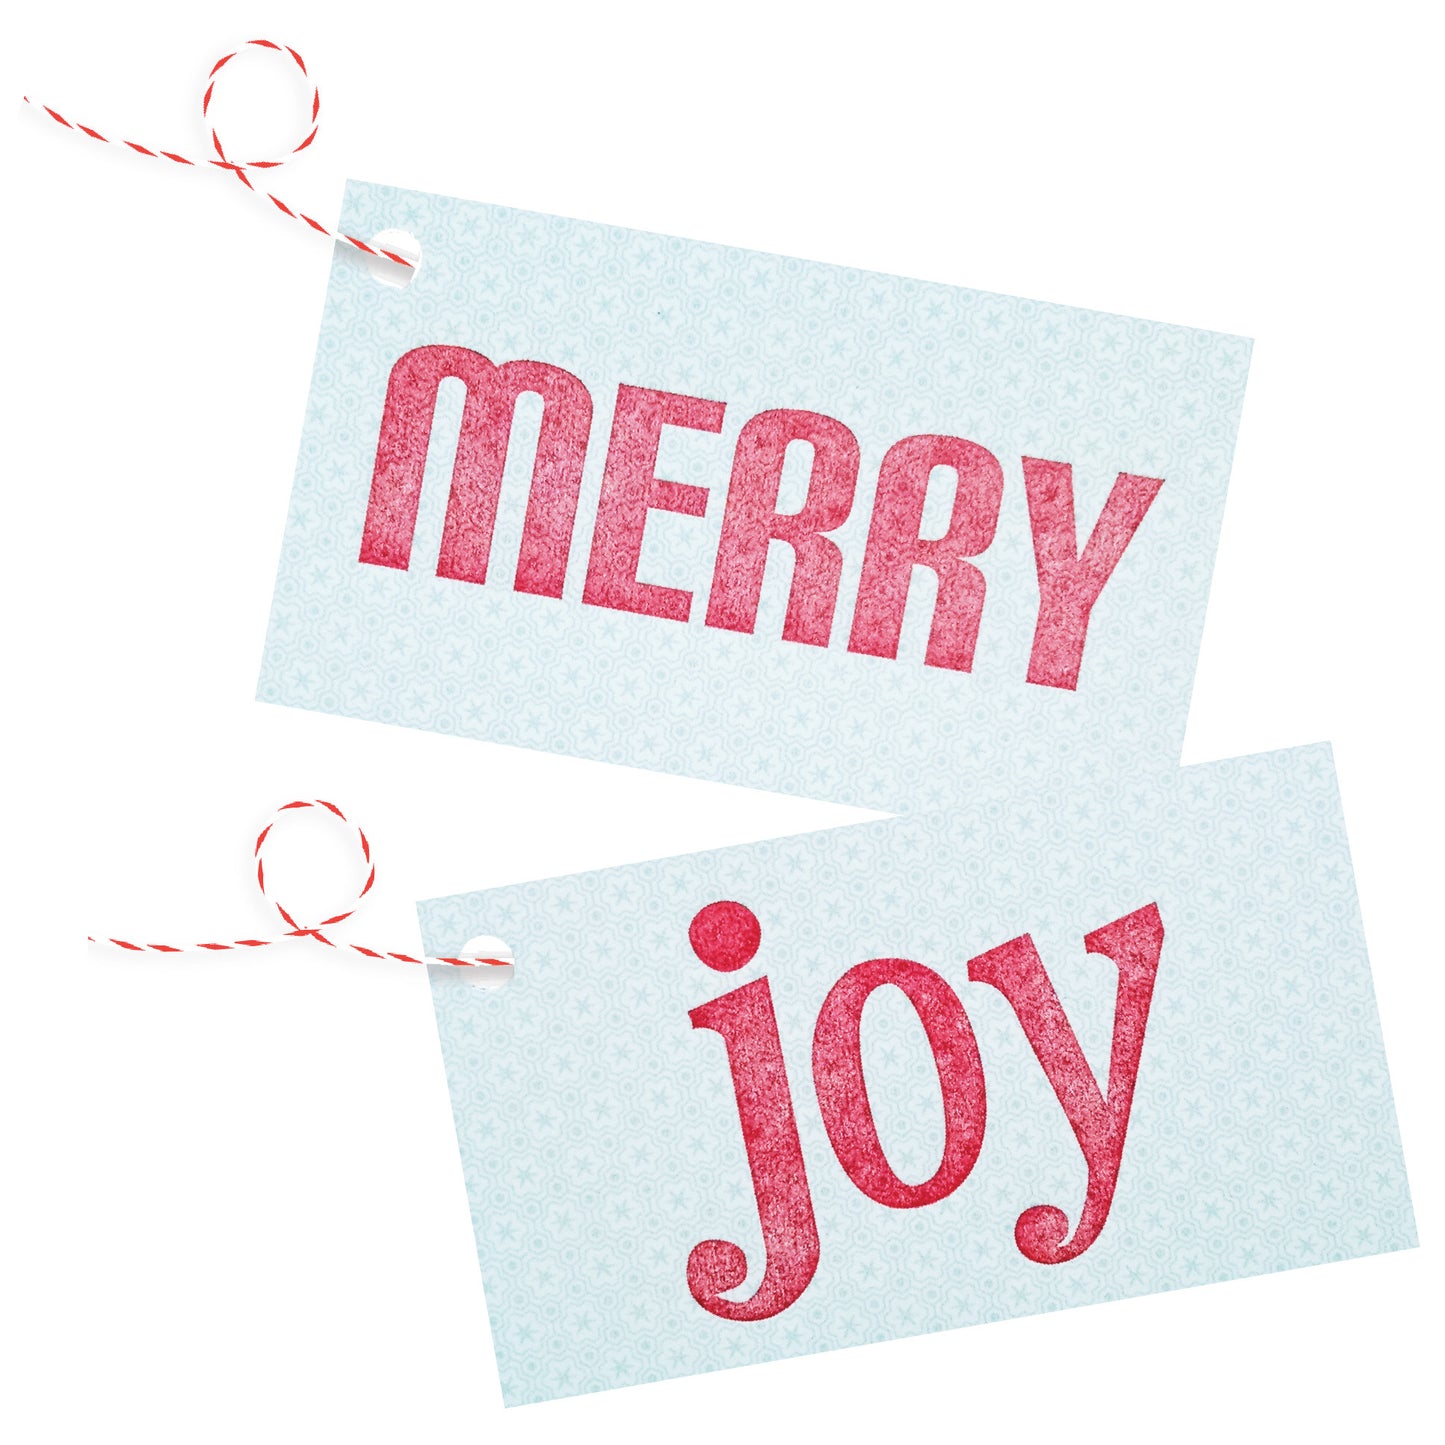 Merry / Joy Letterpress Gift Tags on Ice Blue & White Patterned Stock - Pack of 4 - Idea Chíc